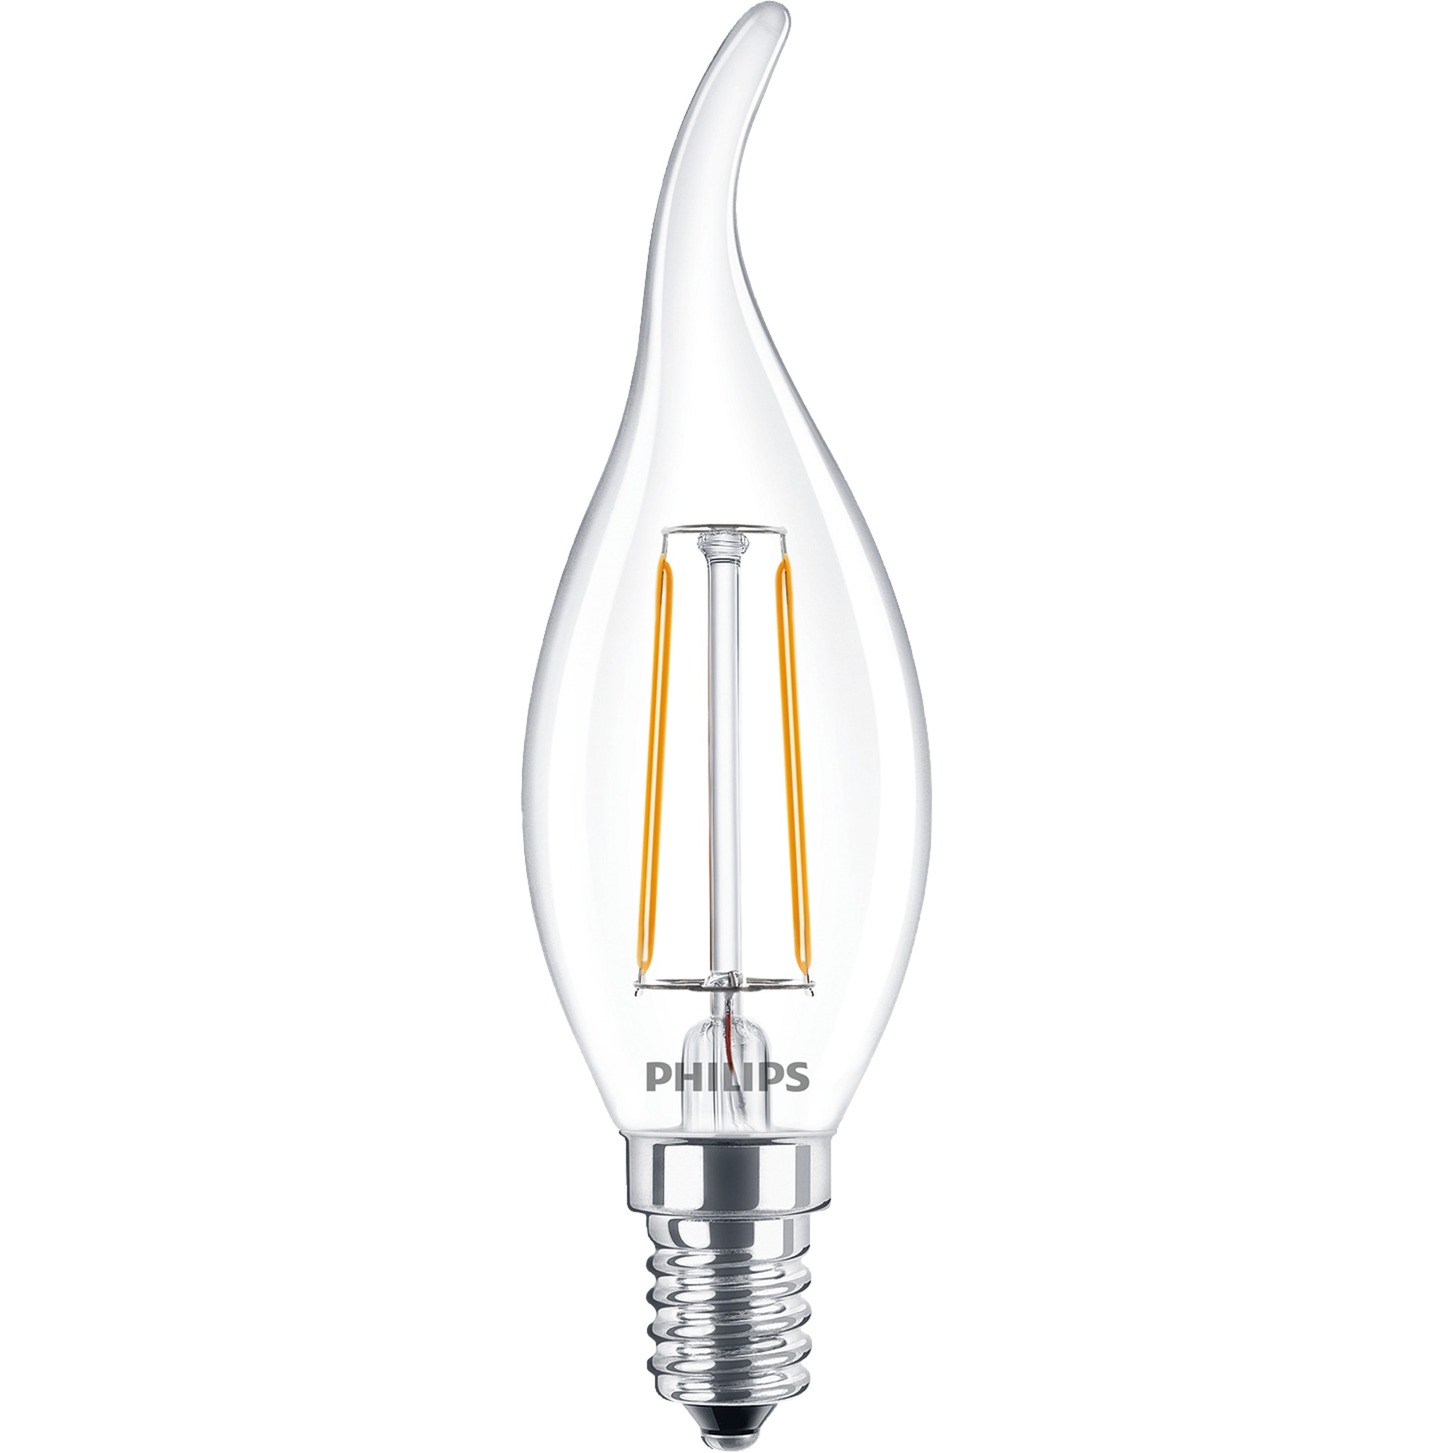 Classic energy-saving lamp Ciep?e bia?e 2 W E14 A++, Lampa LED